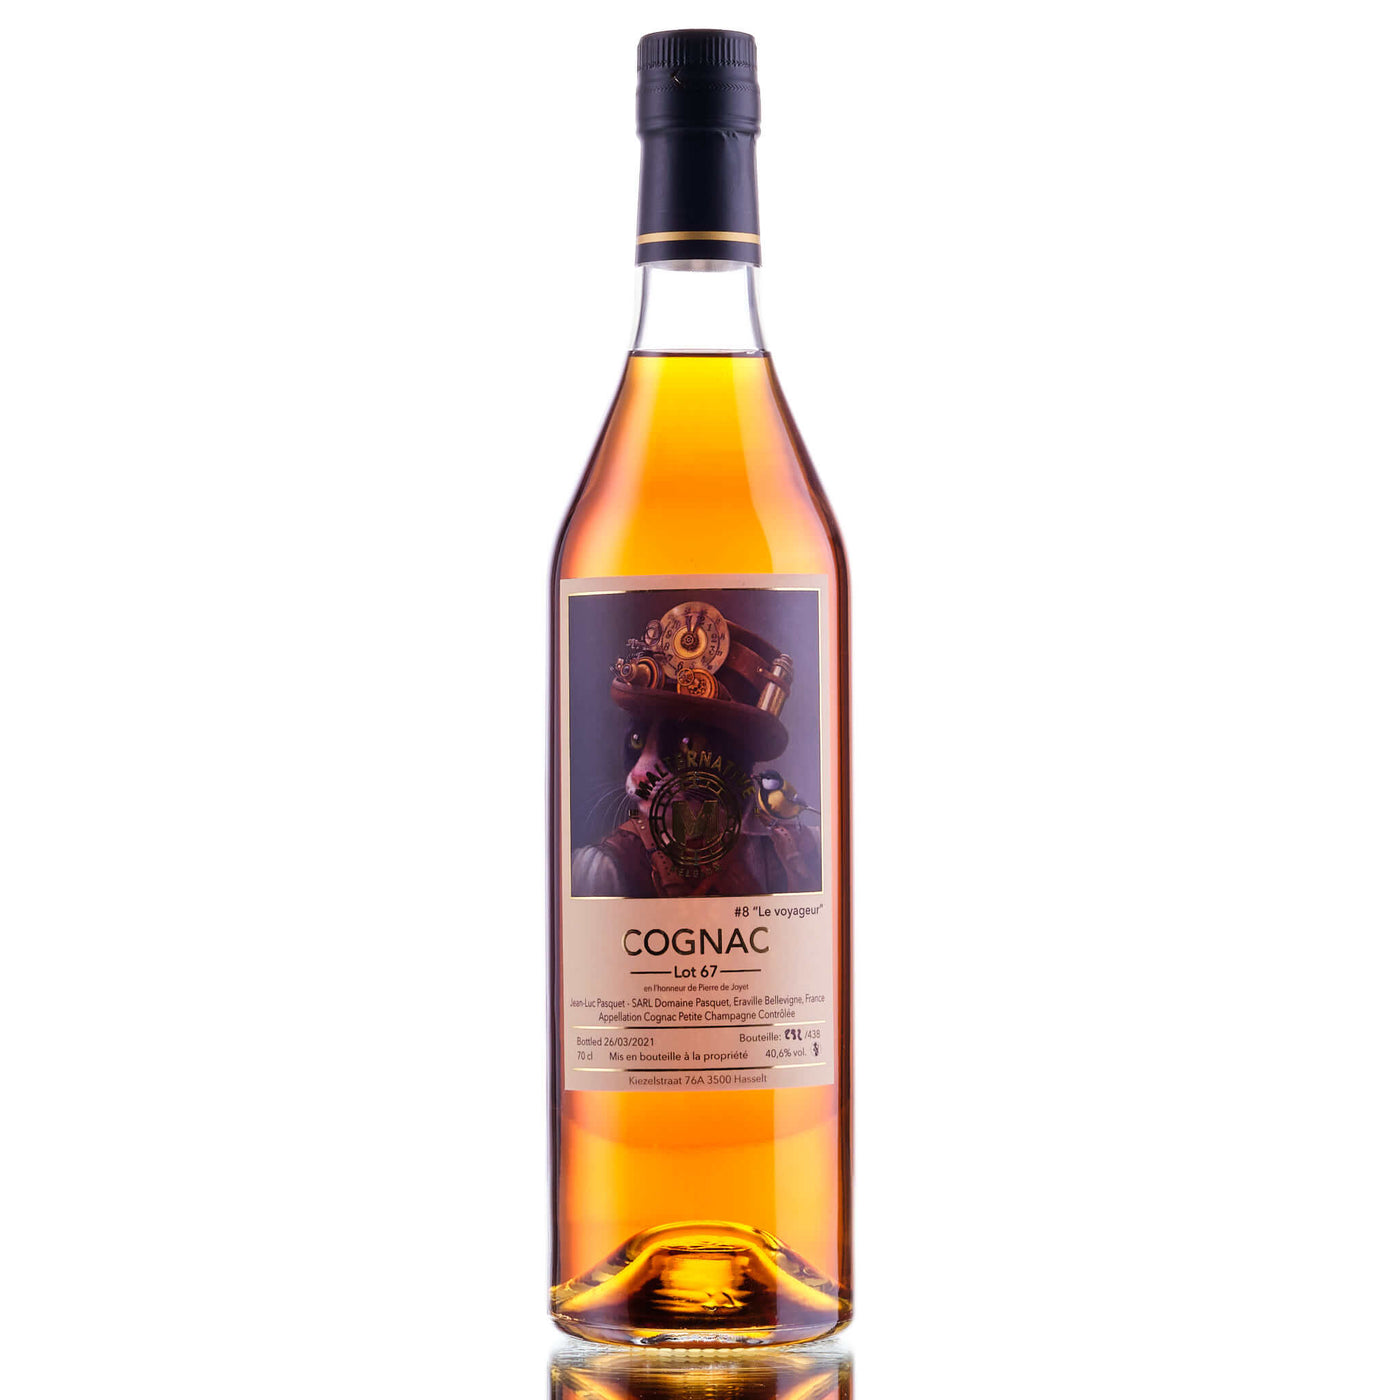 Malternative Belgium Cognac #8 Le Voyageur (Lot 67)